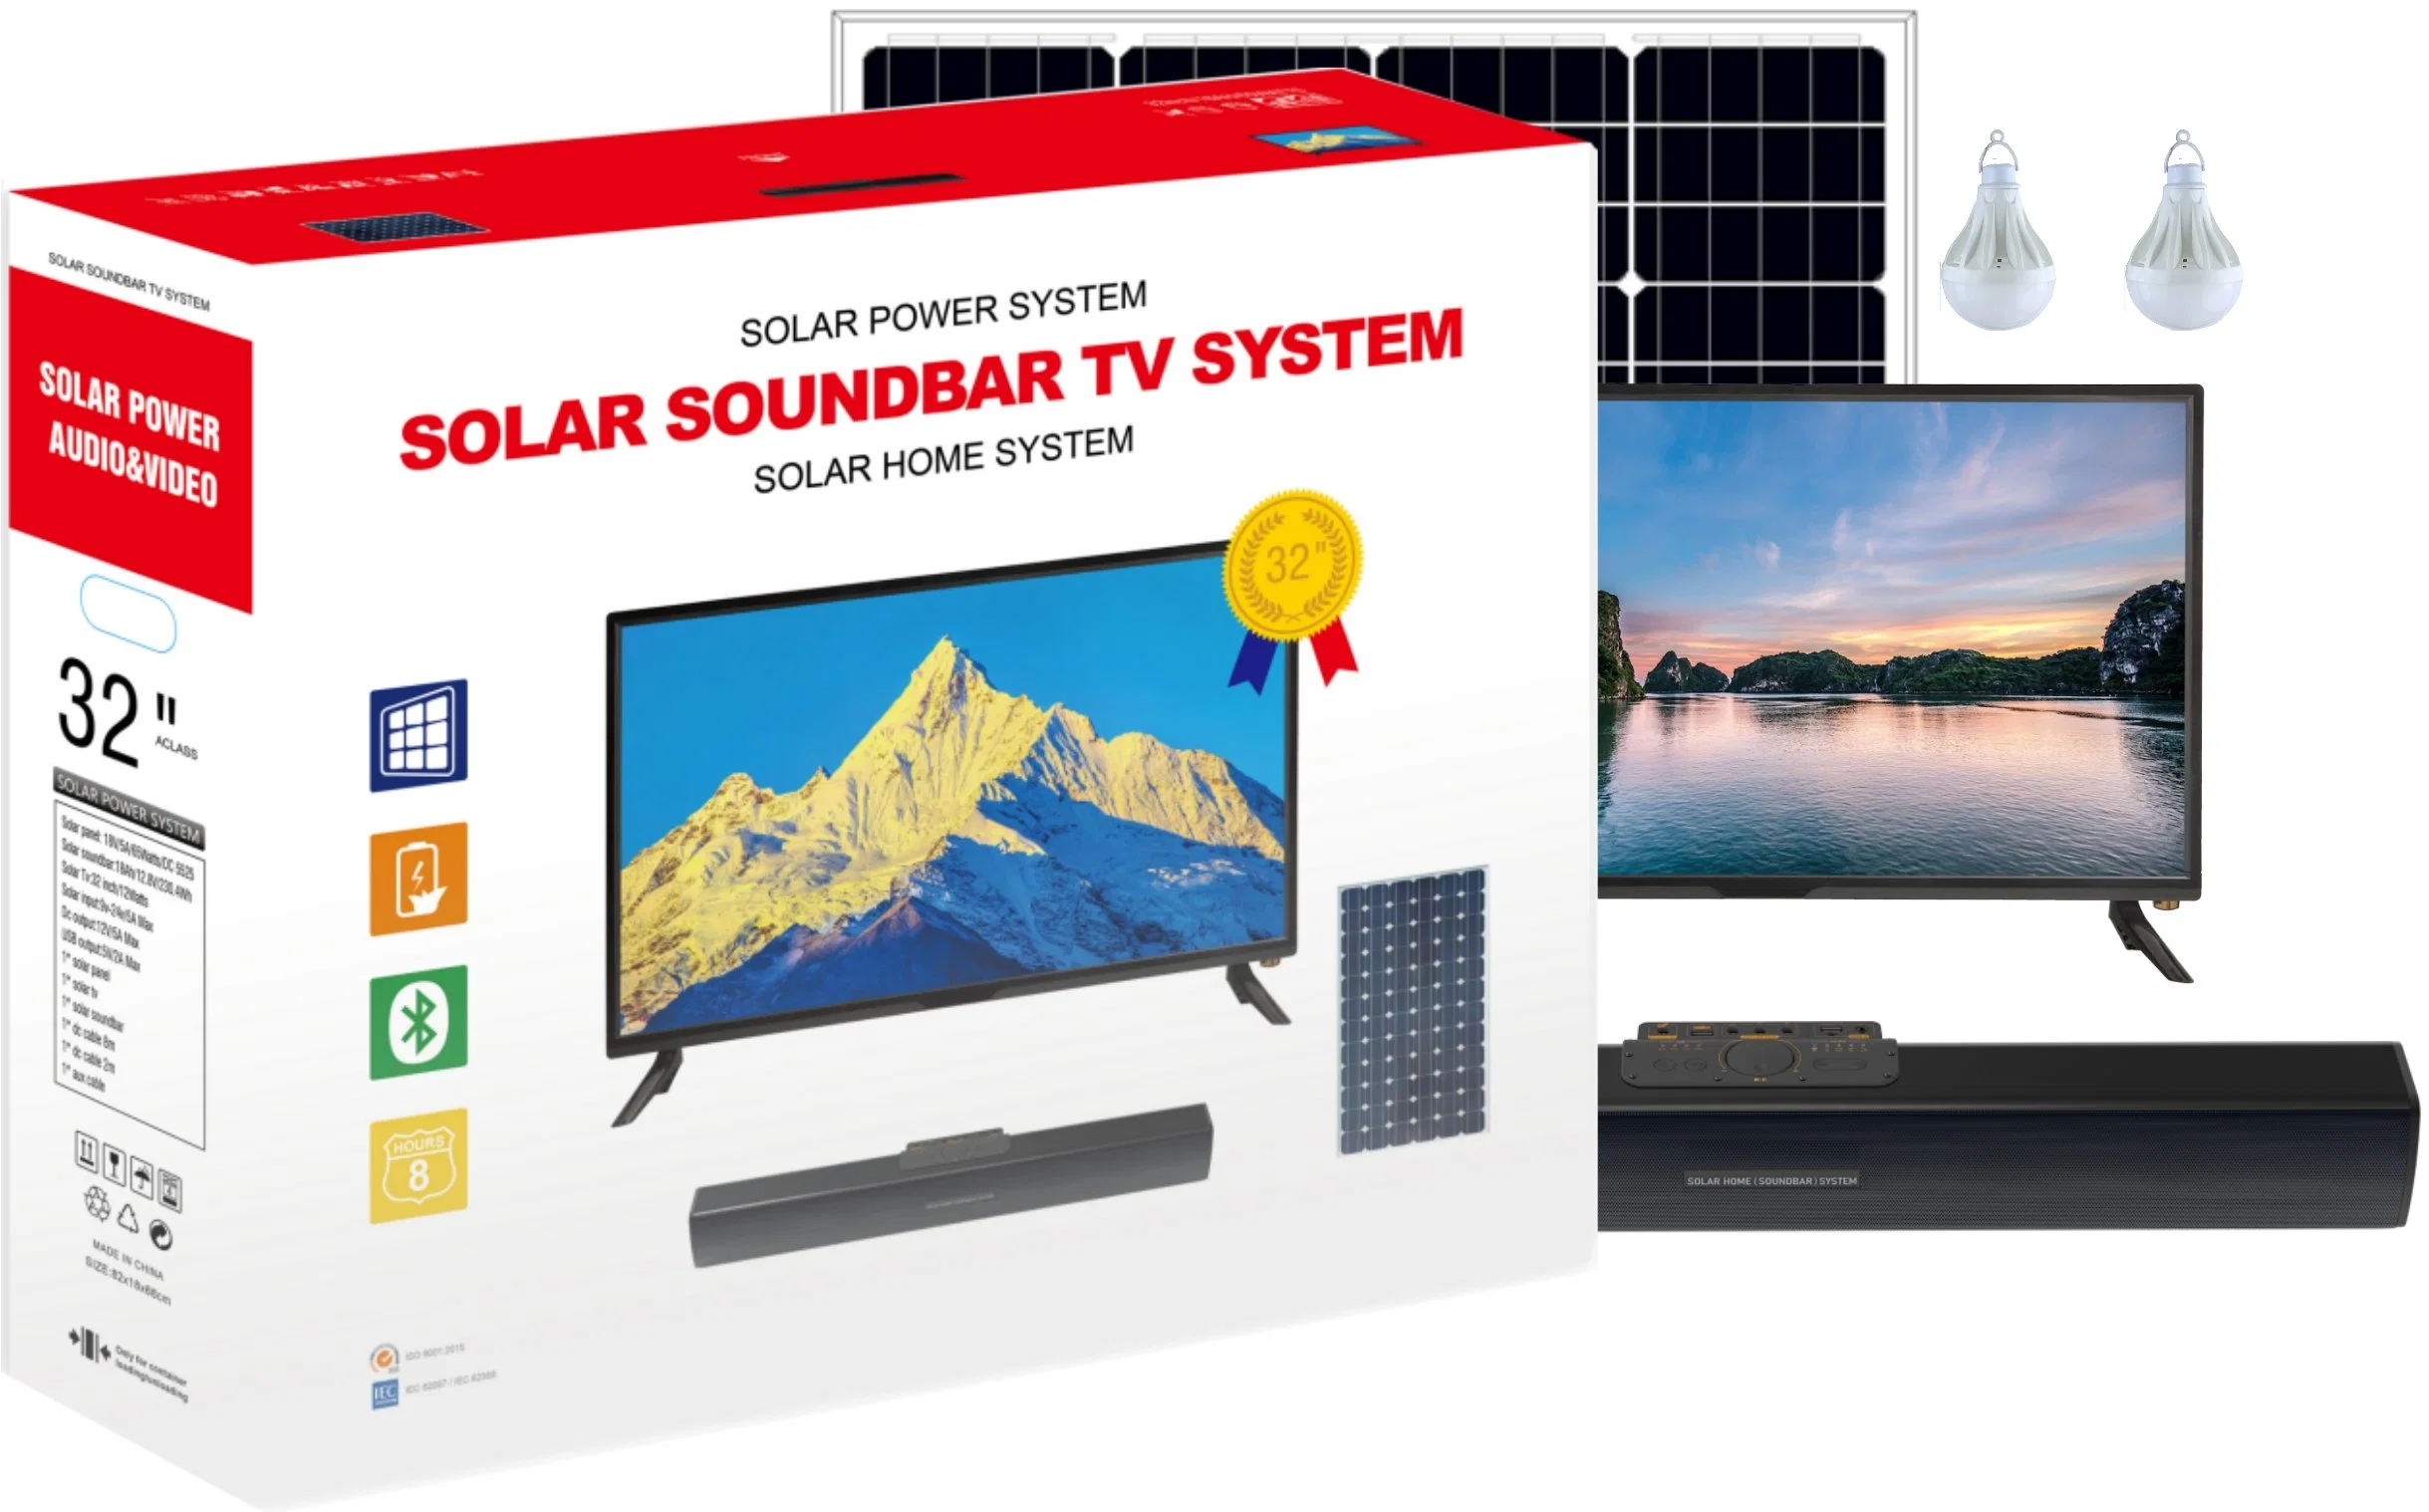 Pcv fábrica Casa Solar Solar Power System Sistema de televisión Sound-Bar Sound-Bar Multifonctions soporte Bluetooth, la tarjeta del TF, Radio FM, USB, Aux Stockage energía, Portable